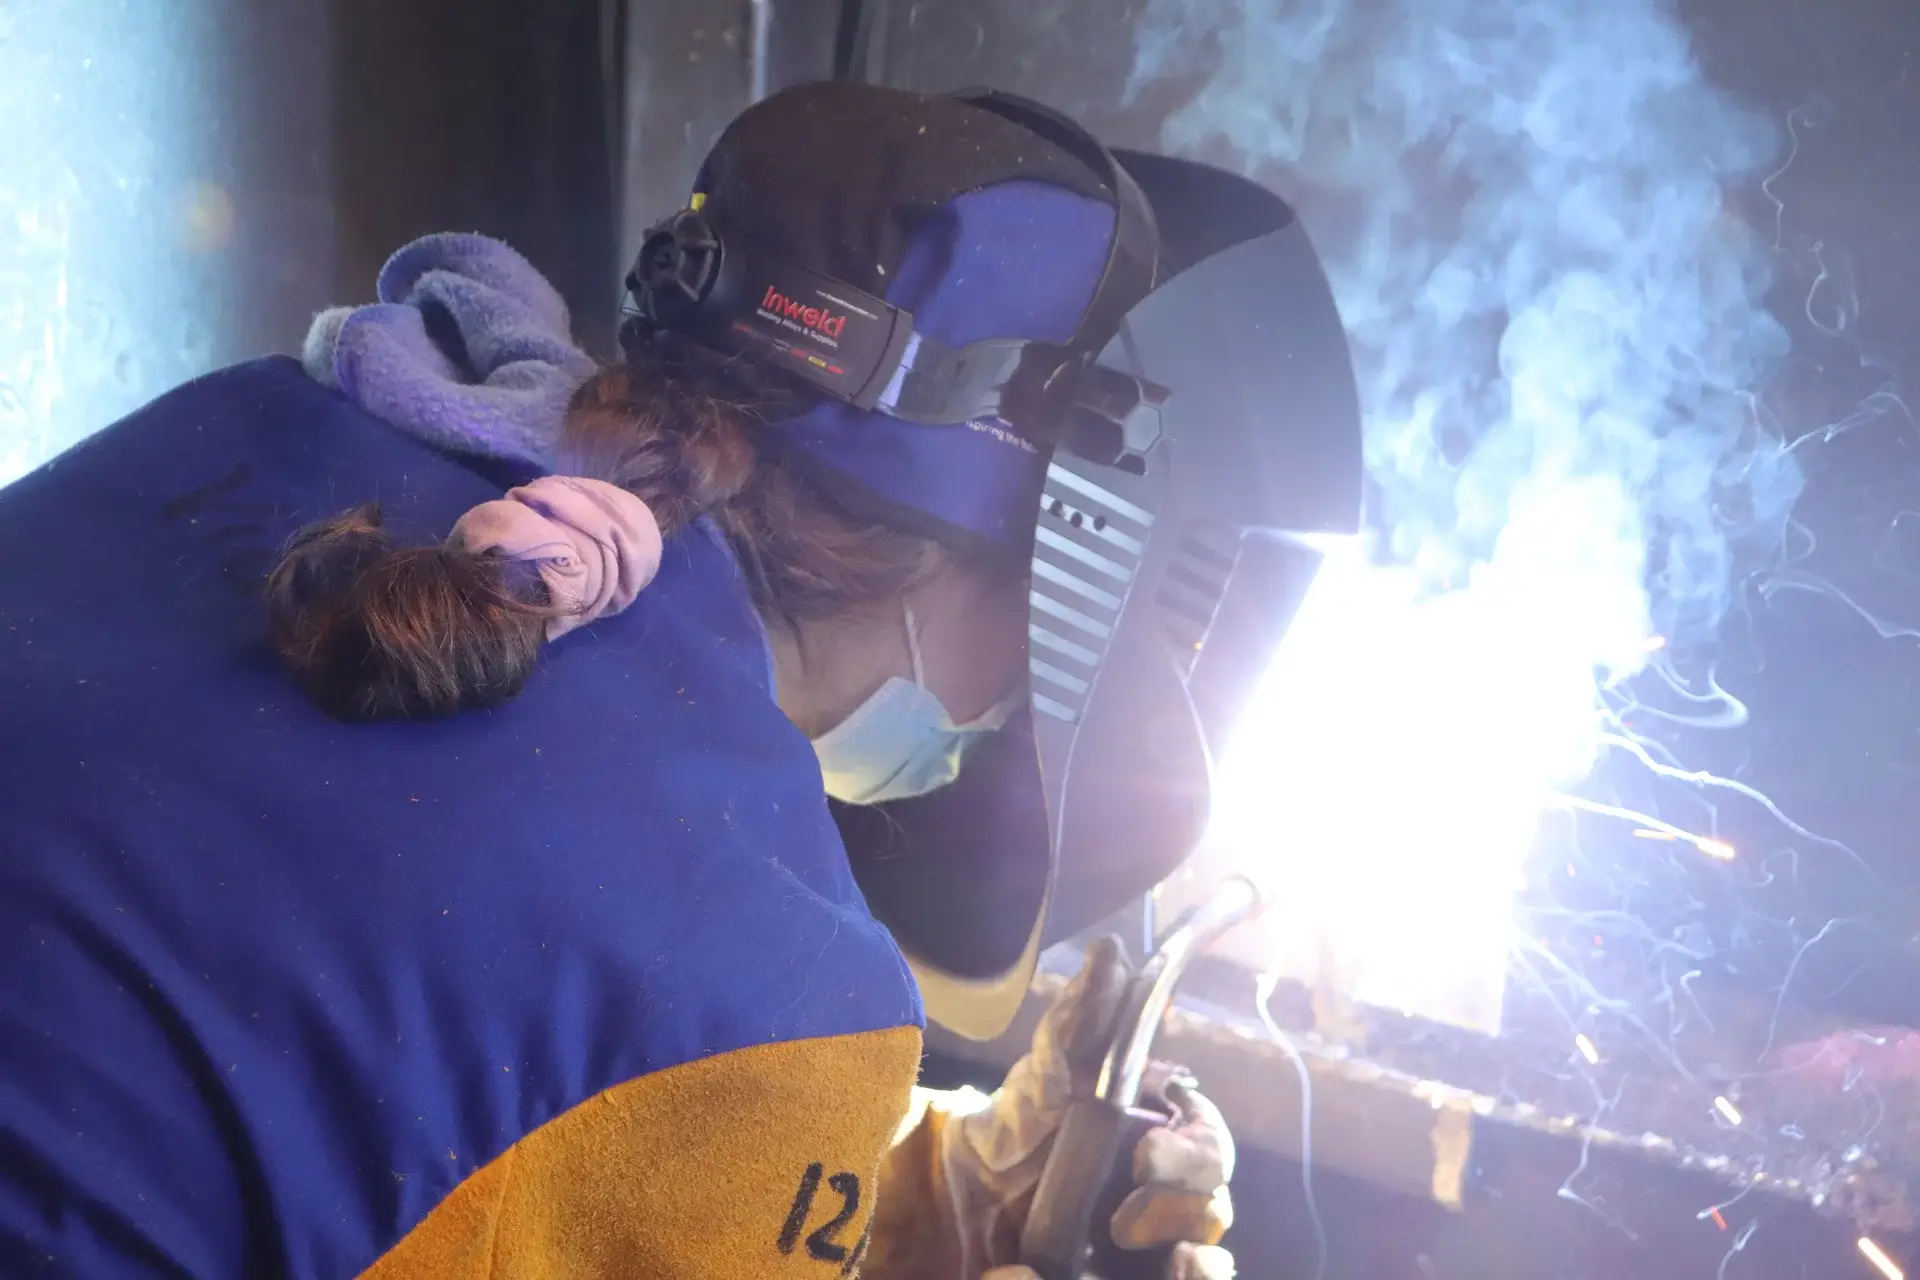 Women Welders: The Journey Of Welders Reshaping The Welding Industry